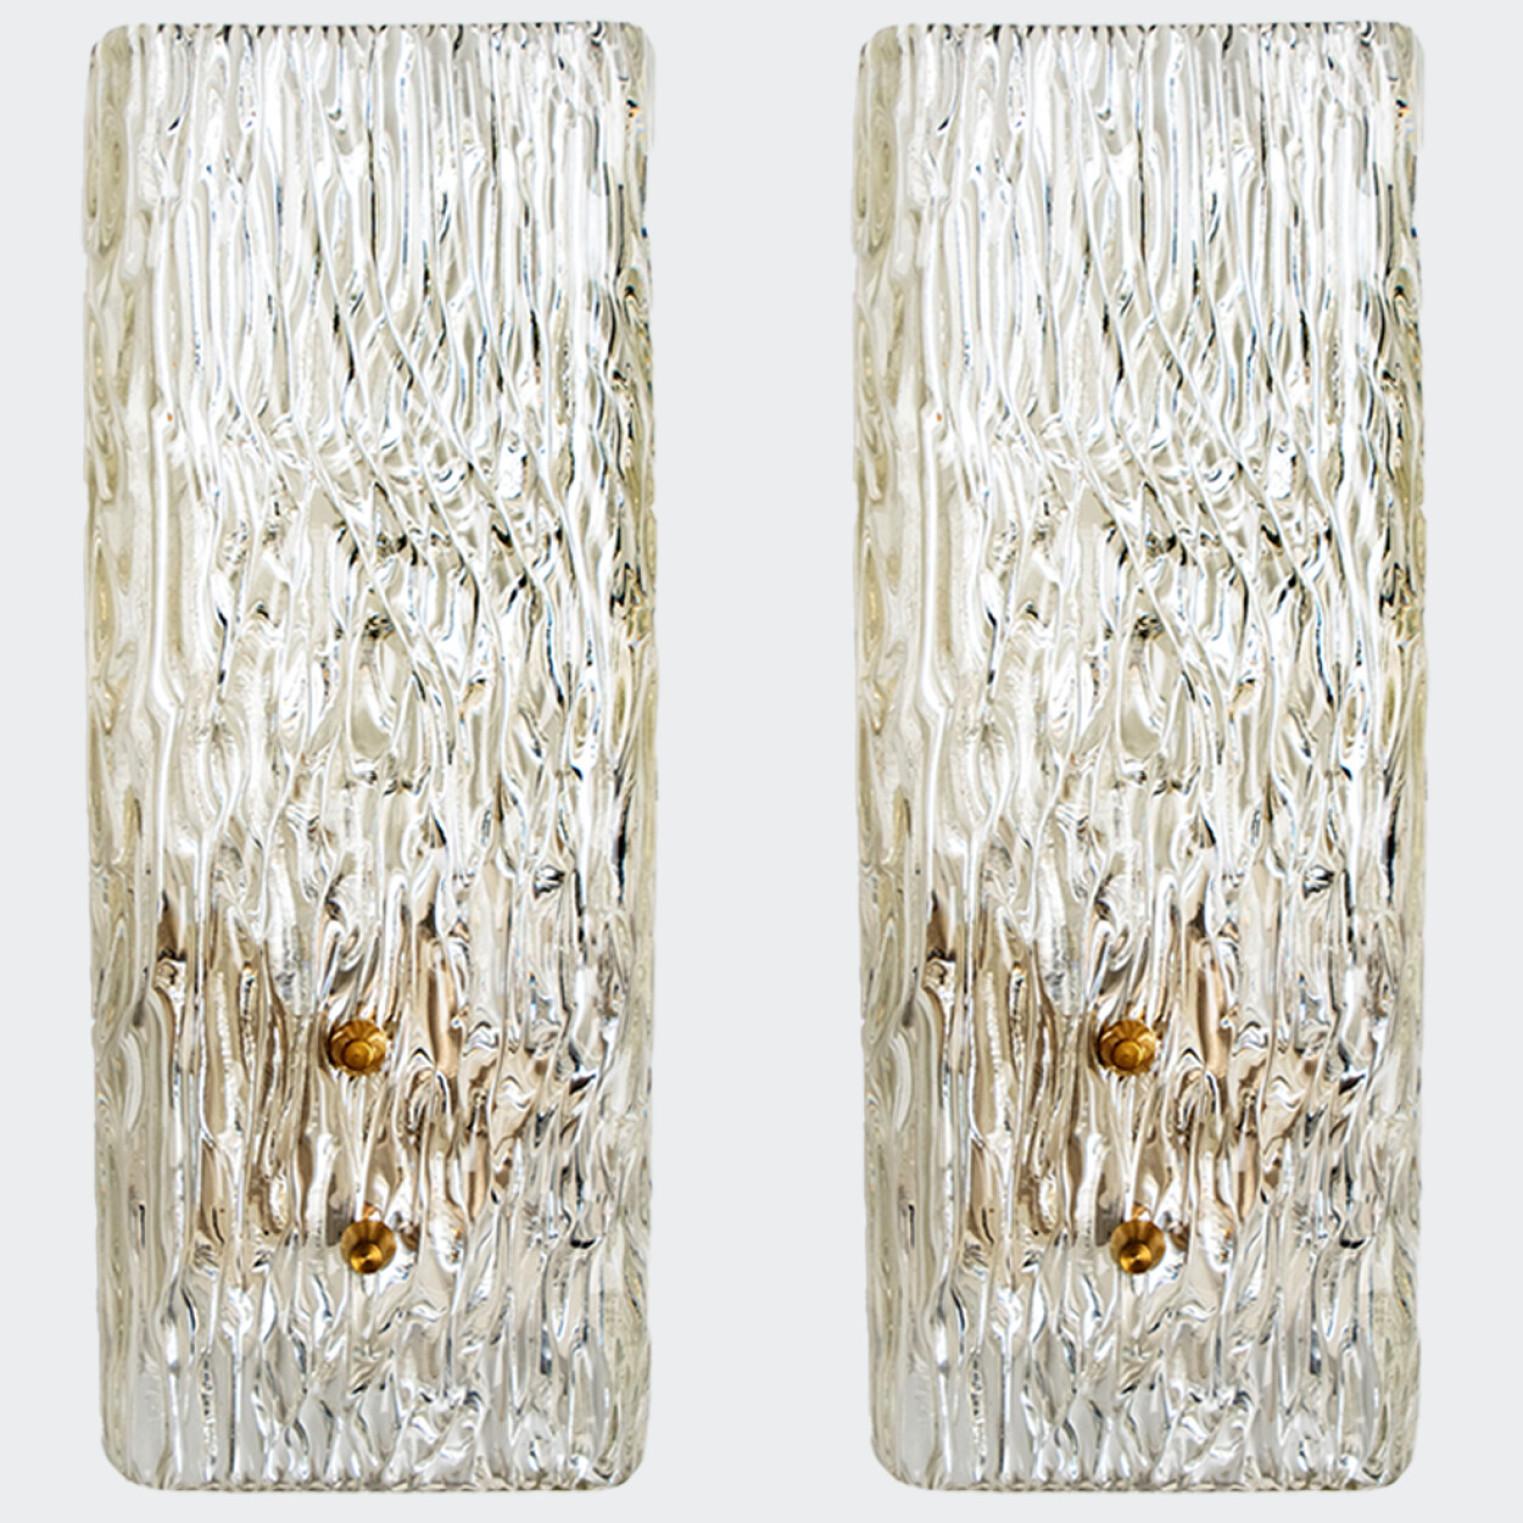 Schöne und elegante moderne Wandleuchten aus Messing, hergestellt von J.T. Kalmar Österreich in den 1960er Jahren. Wunderschönes Design, das auf sehr hohem Niveau ausgeführt wurde.

Jede Leuchte ist mit einer massiven, strukturierten Glassäule